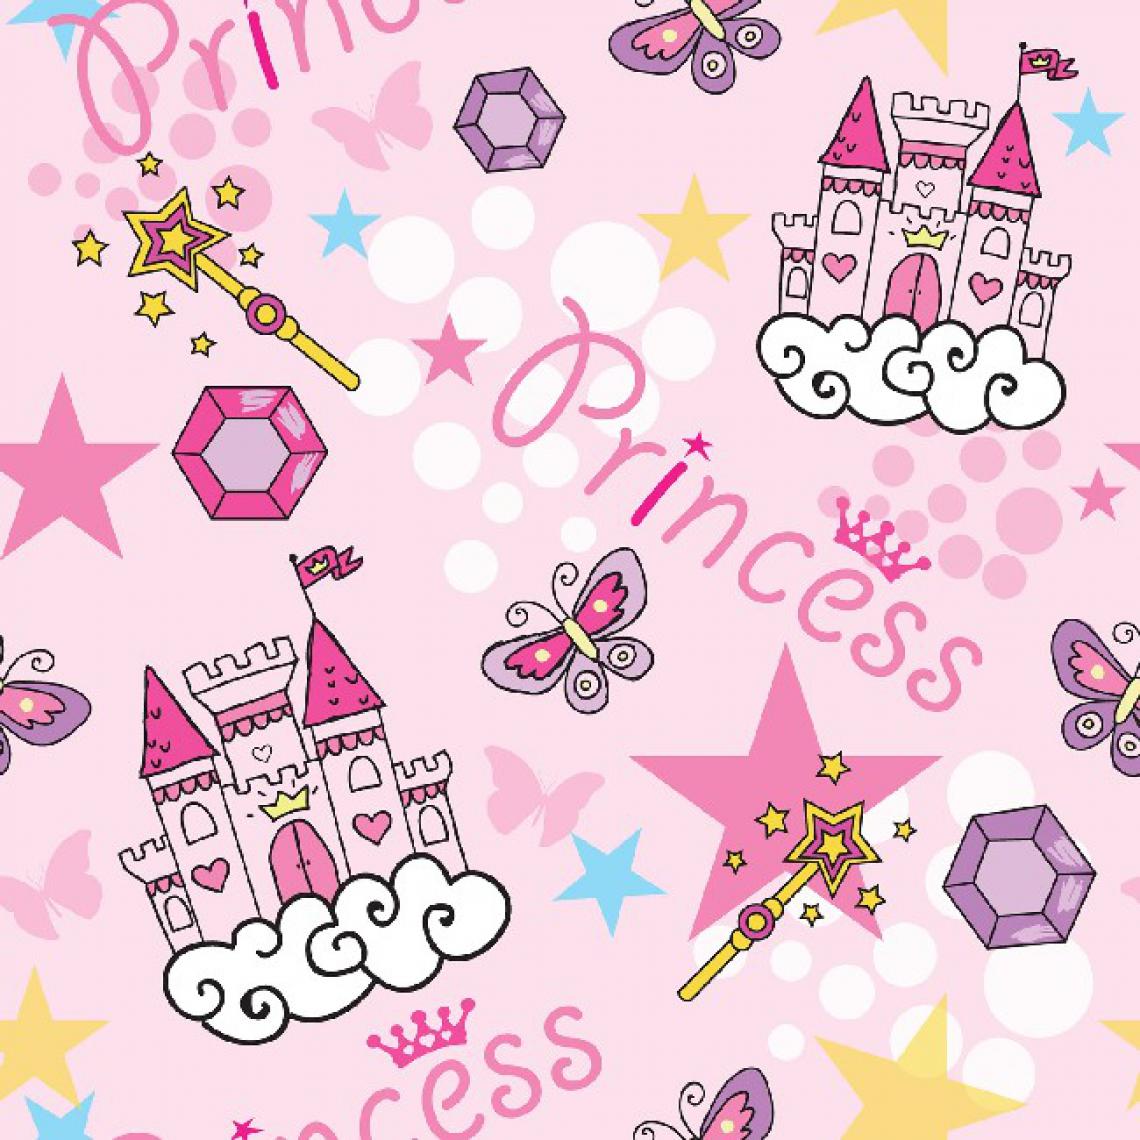 Homemania - HOMEMANIA Tapis Imprimé Pink Princess - pour les enfants - Décoration de Maison - antidérapants - Pour Salon, séjour, chambre à coucher - Multicolore en Polyester, Coton, 80 x 50 cm - Tapis